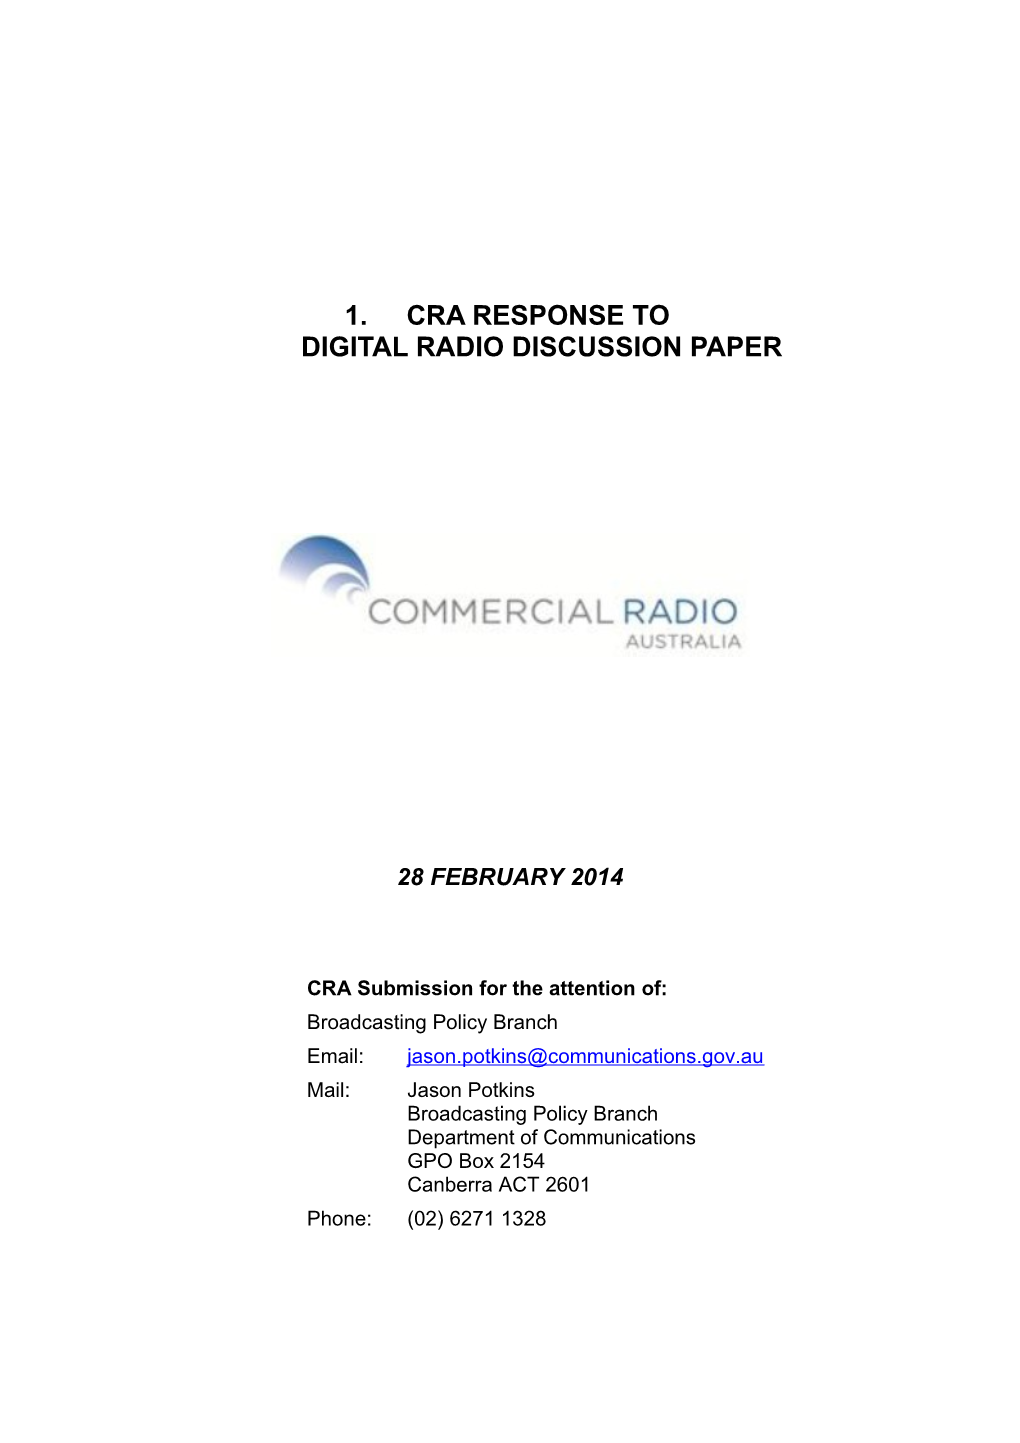 CRA Response to Digital Radio Discussion Paper